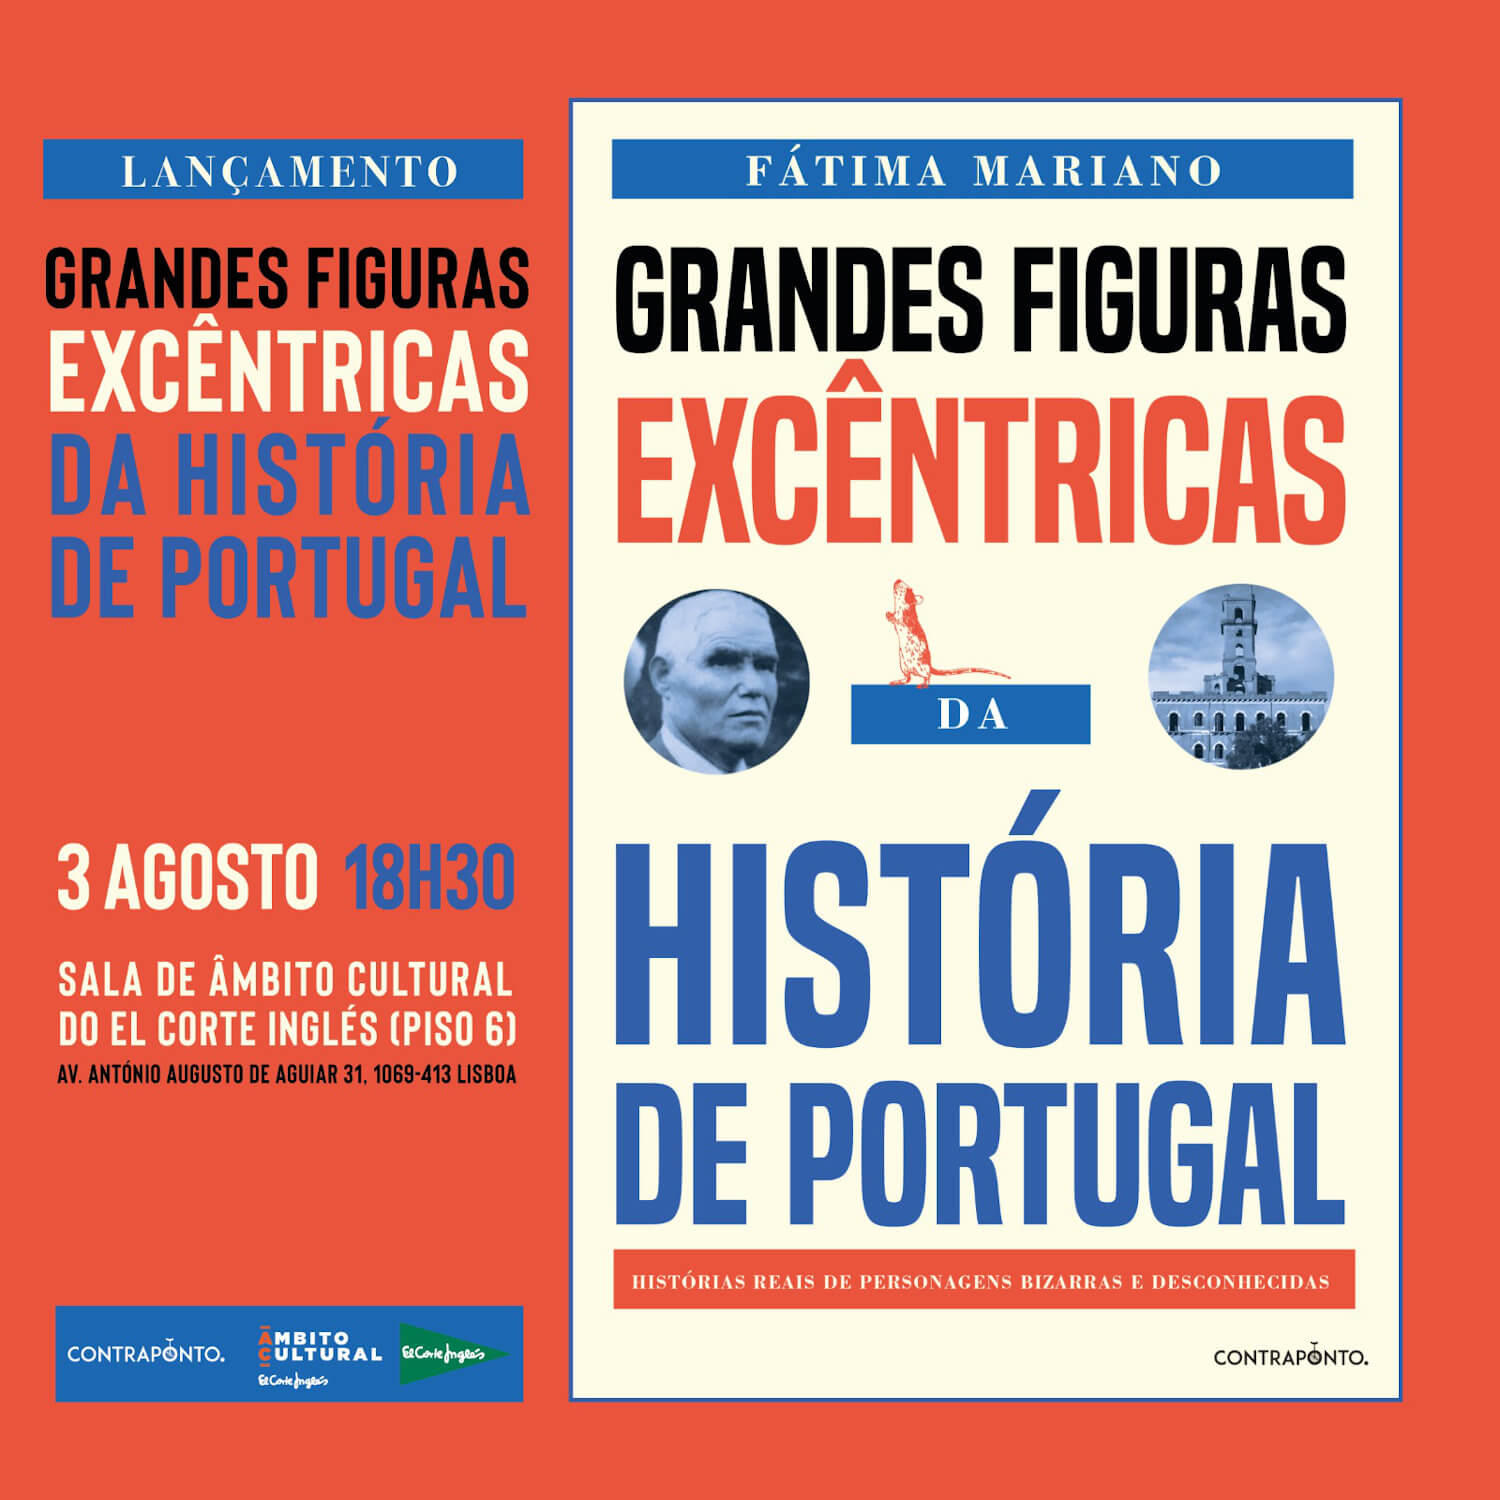 Cartaz do lançamento do livro "Grandes Figuras Excêntricas da História de Portugal", de Fátima Mariano. 3 de Agosto às 18 horas e 30, no El Corte Inglés, em Lisboa